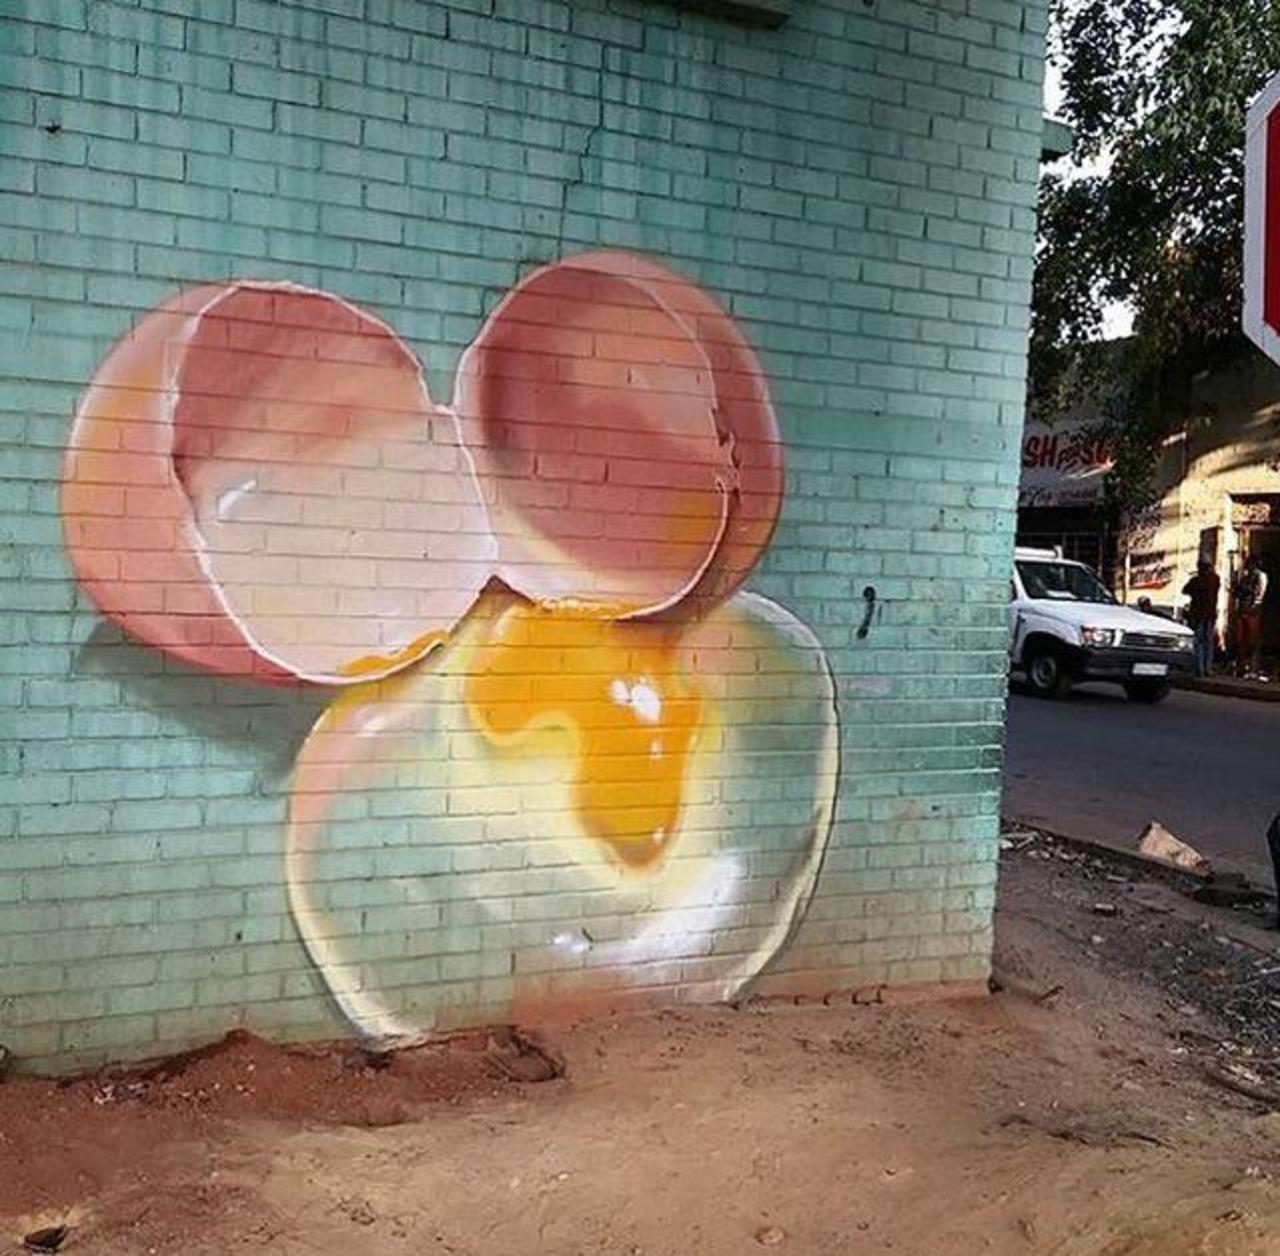 RT @GoogleStreetArt: Street Art by falco1 in Johannesburg SA  

#art #graffiti #mural #streetart http://t.co/wgFXeXxmLr